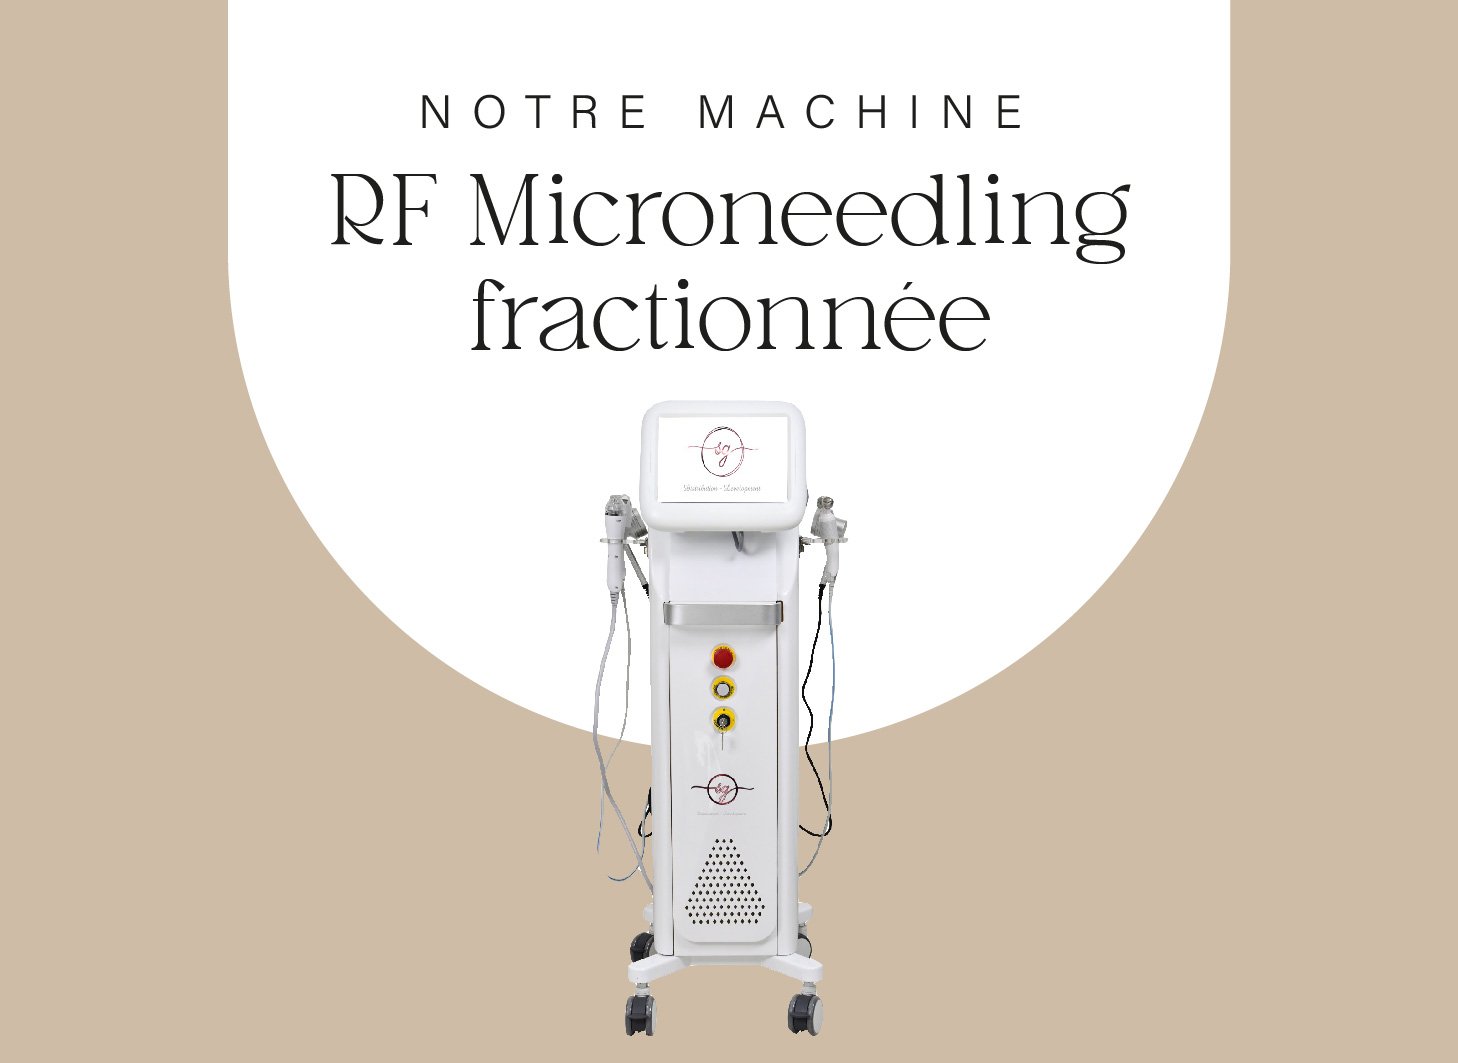 Machine microneedling